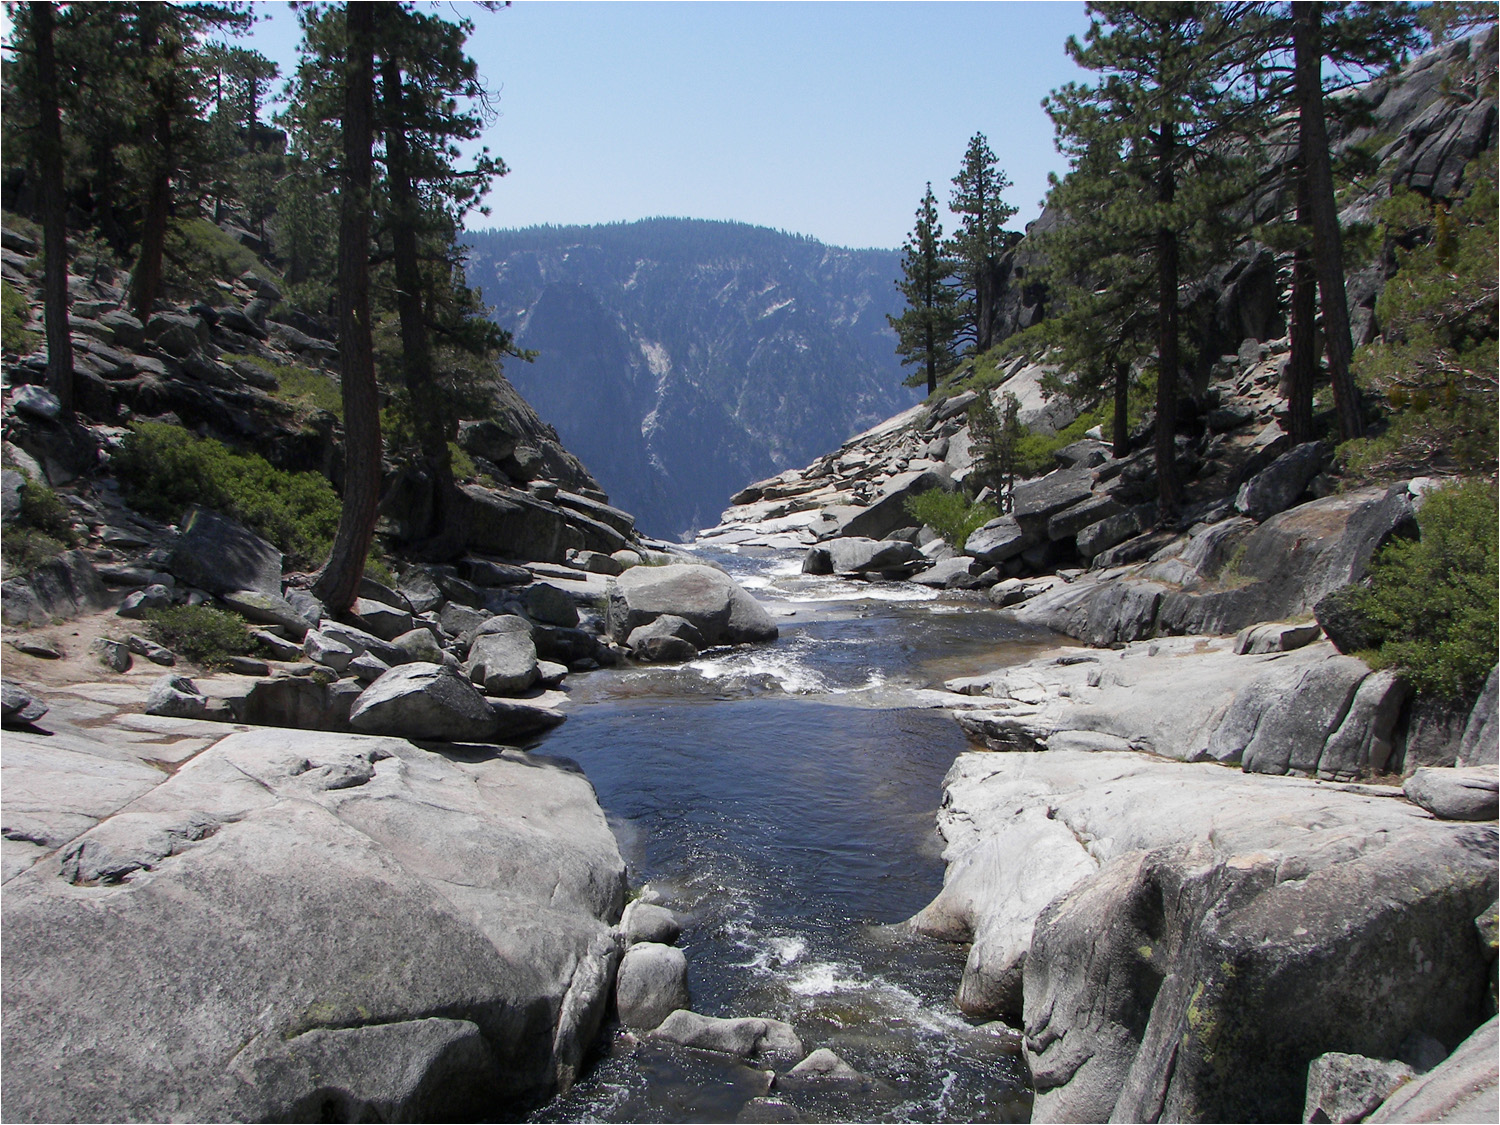 Upper Yosemite Falls Hike- Views of river upstream of falls